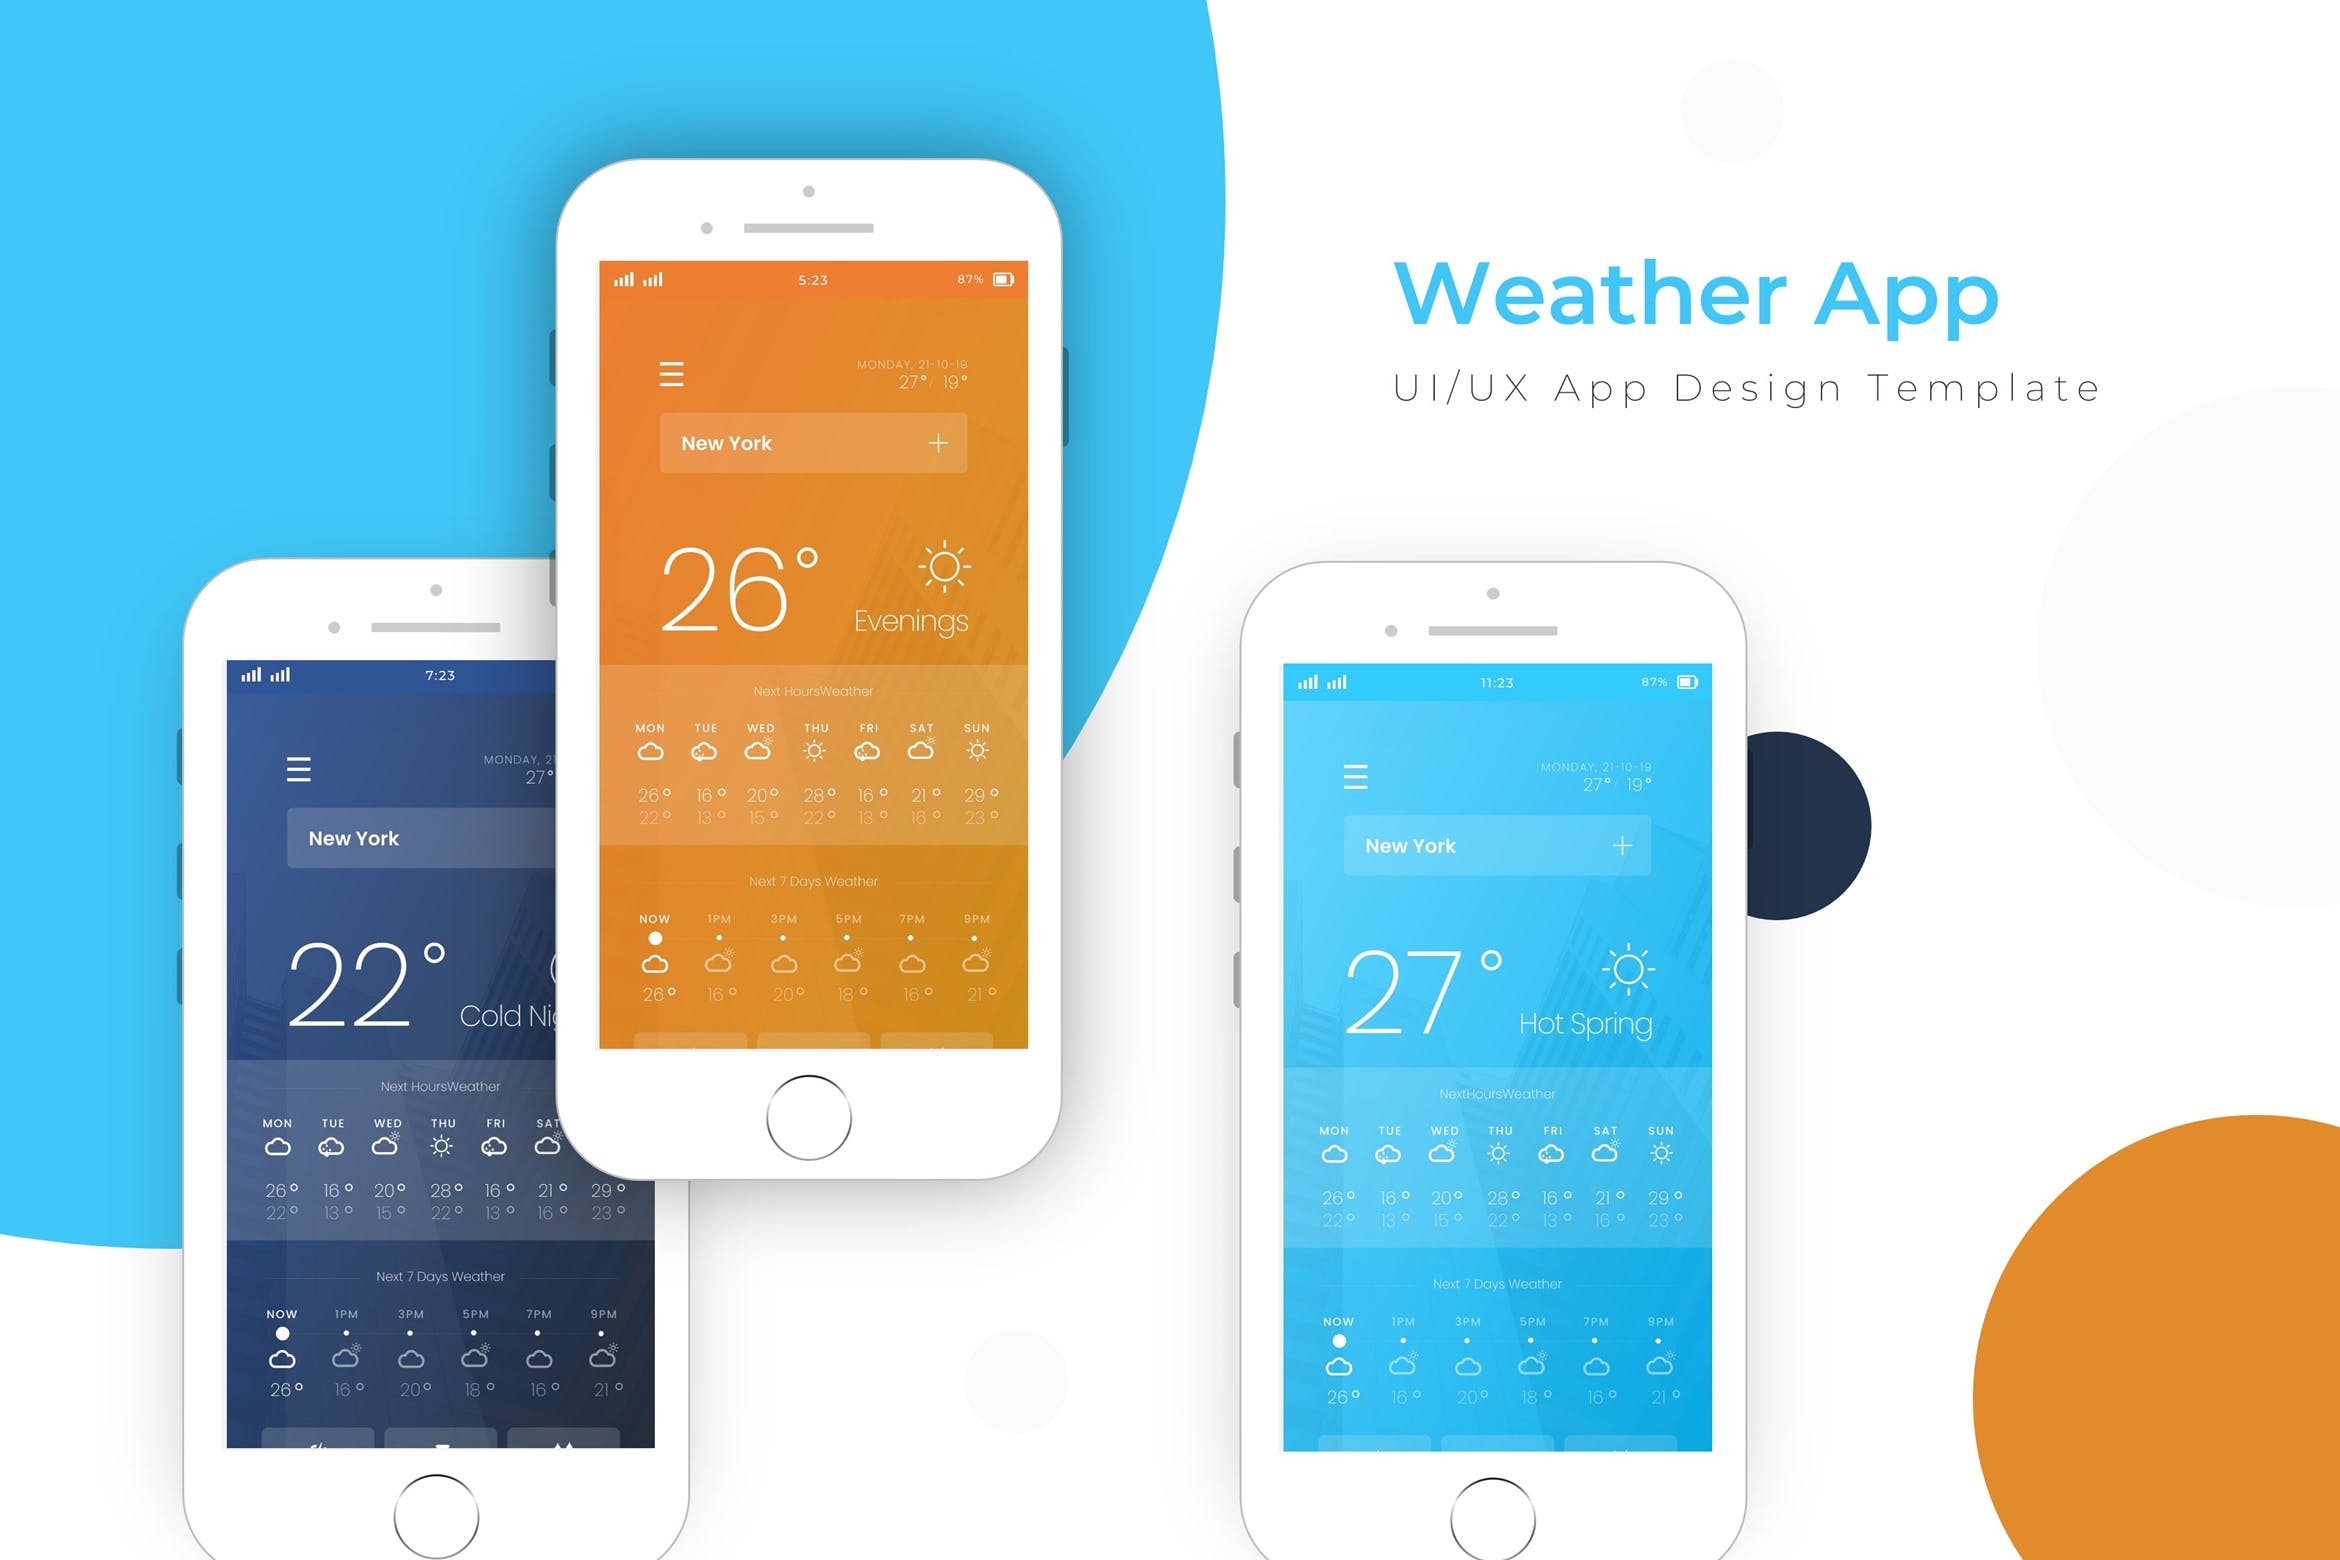 天气预报APP应用界面设计素材库精选模板 Weather Template | App Design Template插图